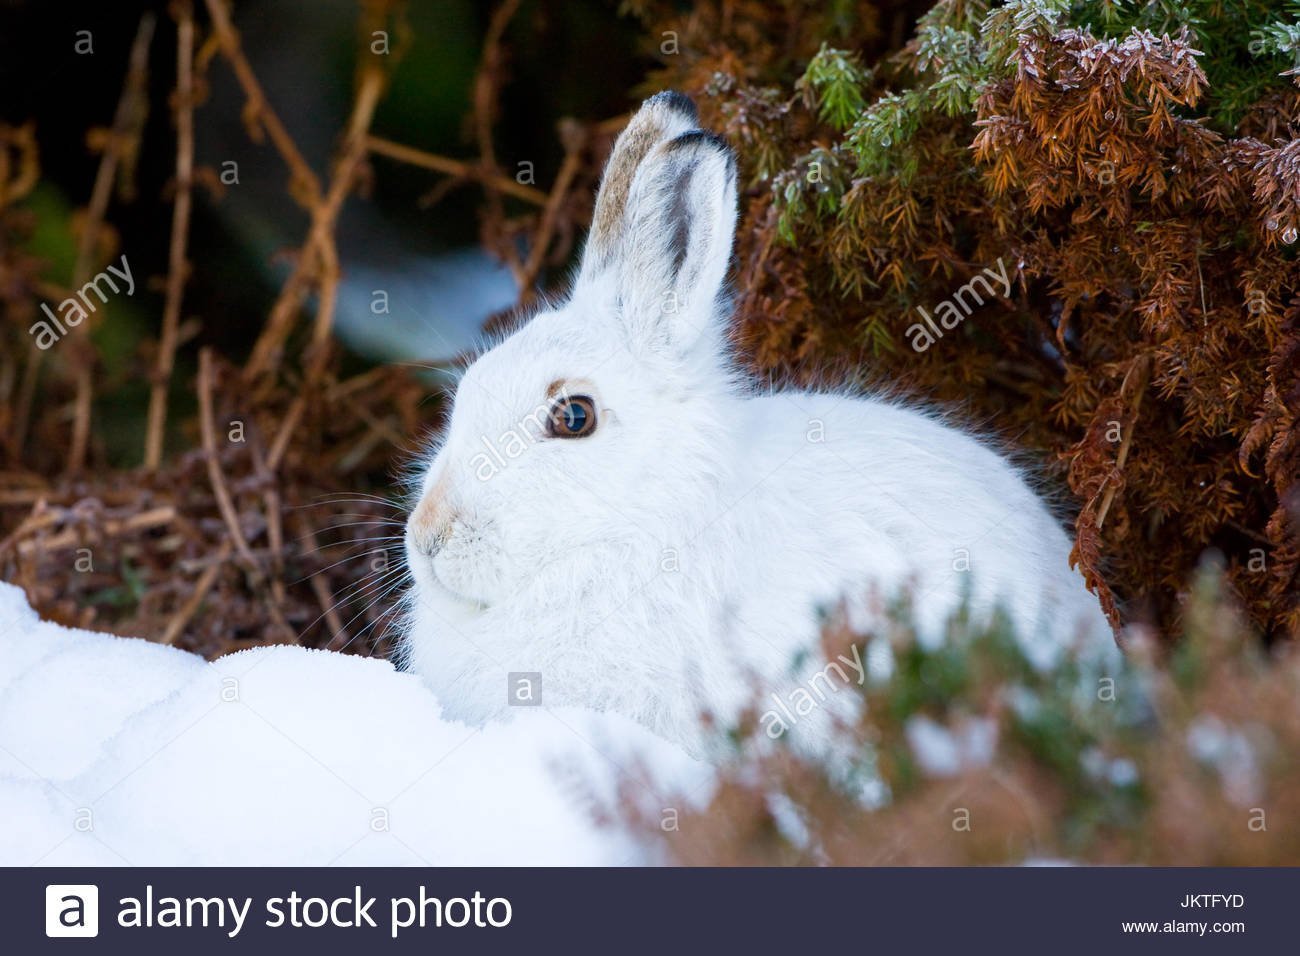 Изменение окраски шерсти у зайца беляка. Заяц Беляк белый. Заяц Беляк с зайчатами. Заяц Беляк Сибирь. Заяц Беляк в лесотундре.